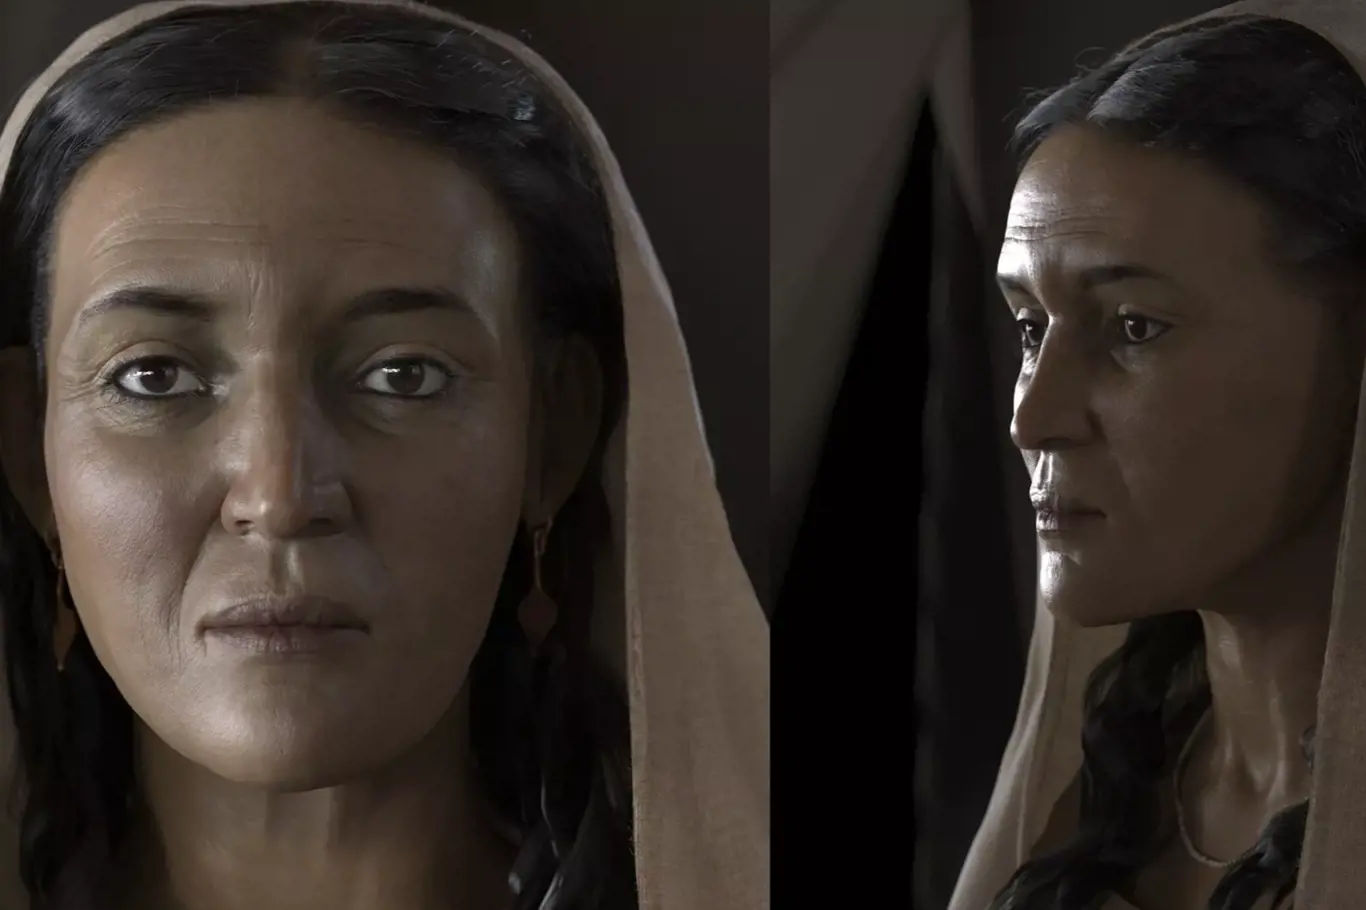 Poprvé v historii byla volně rekonstruována tvář nabatejské ženy